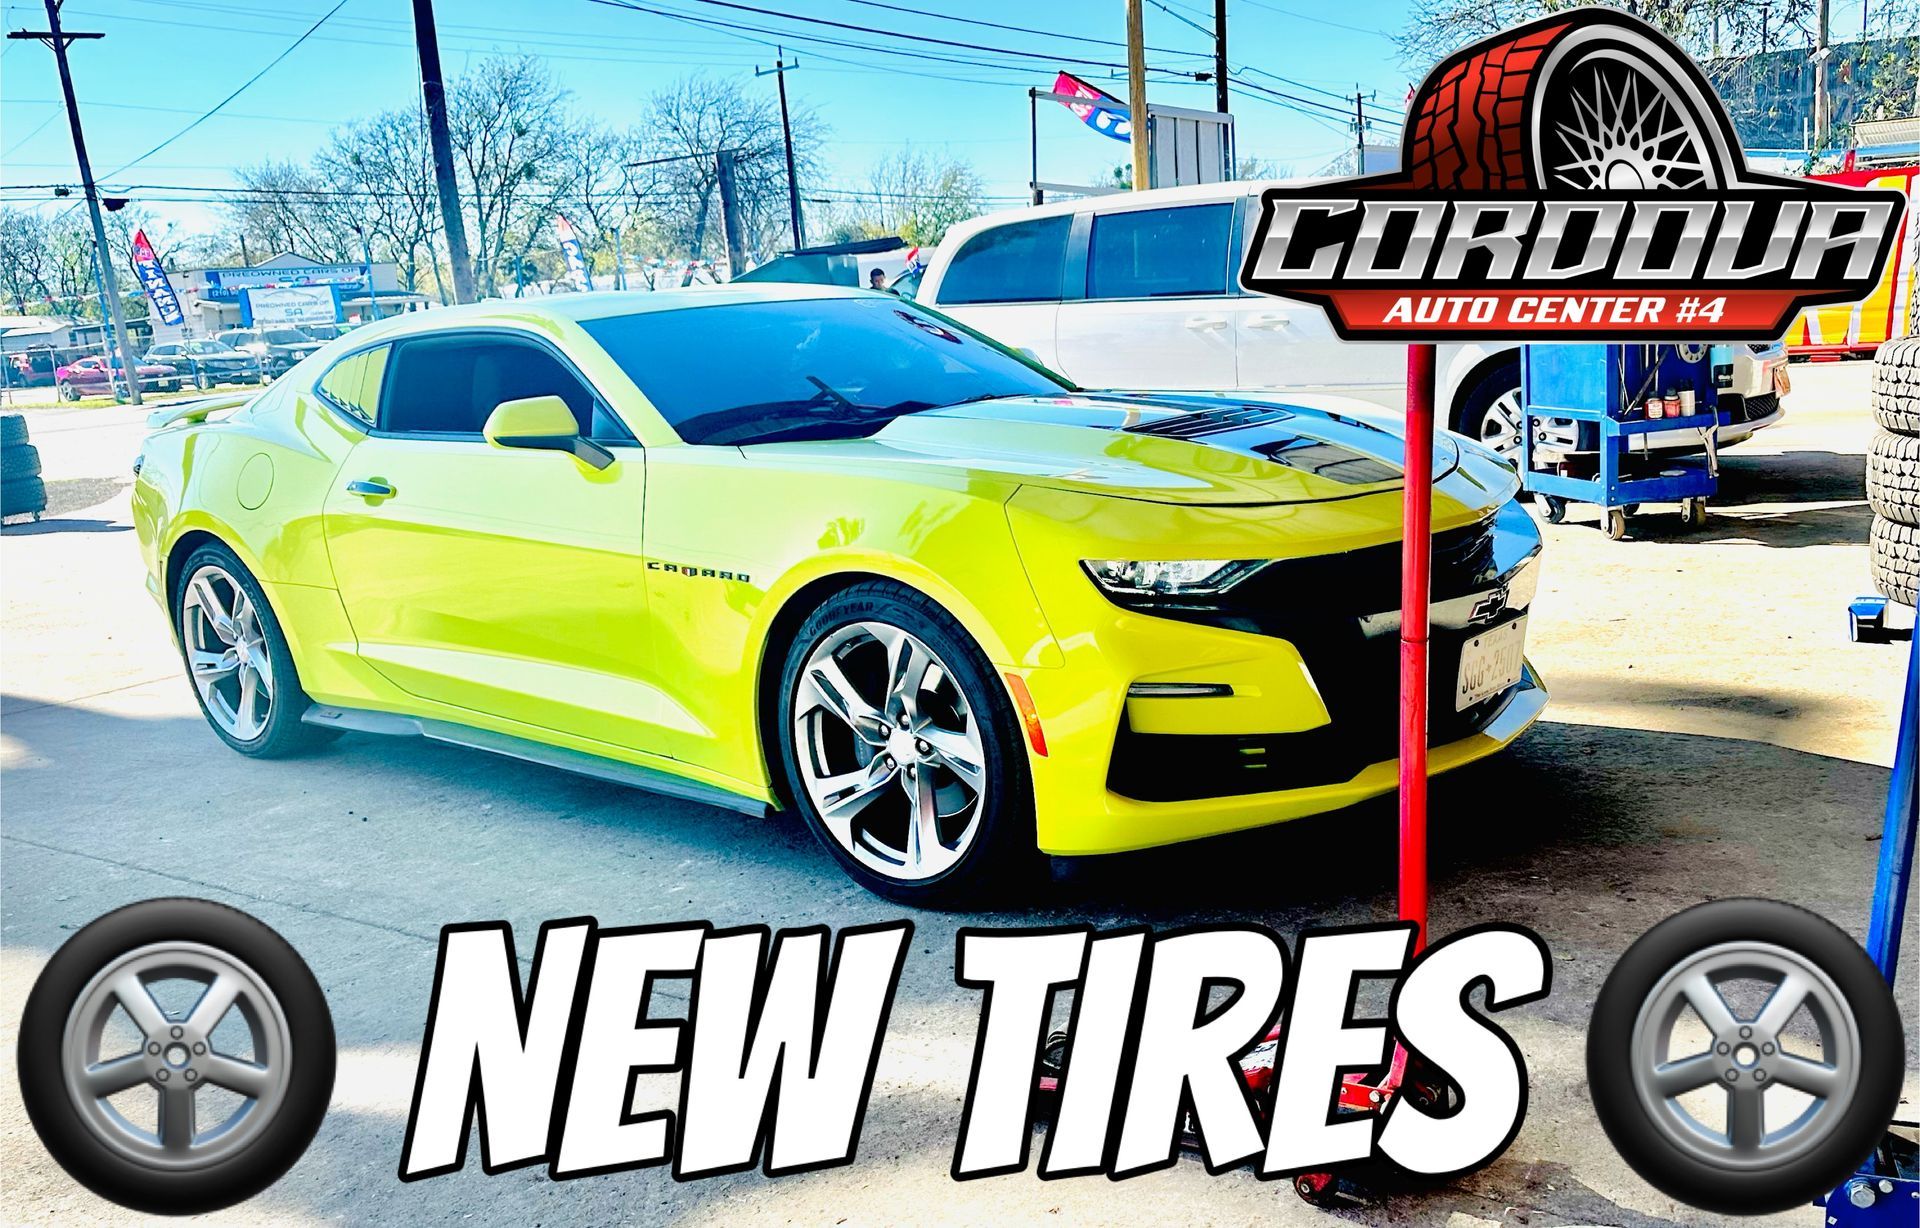 New Tires | Cordova Auto Center #4